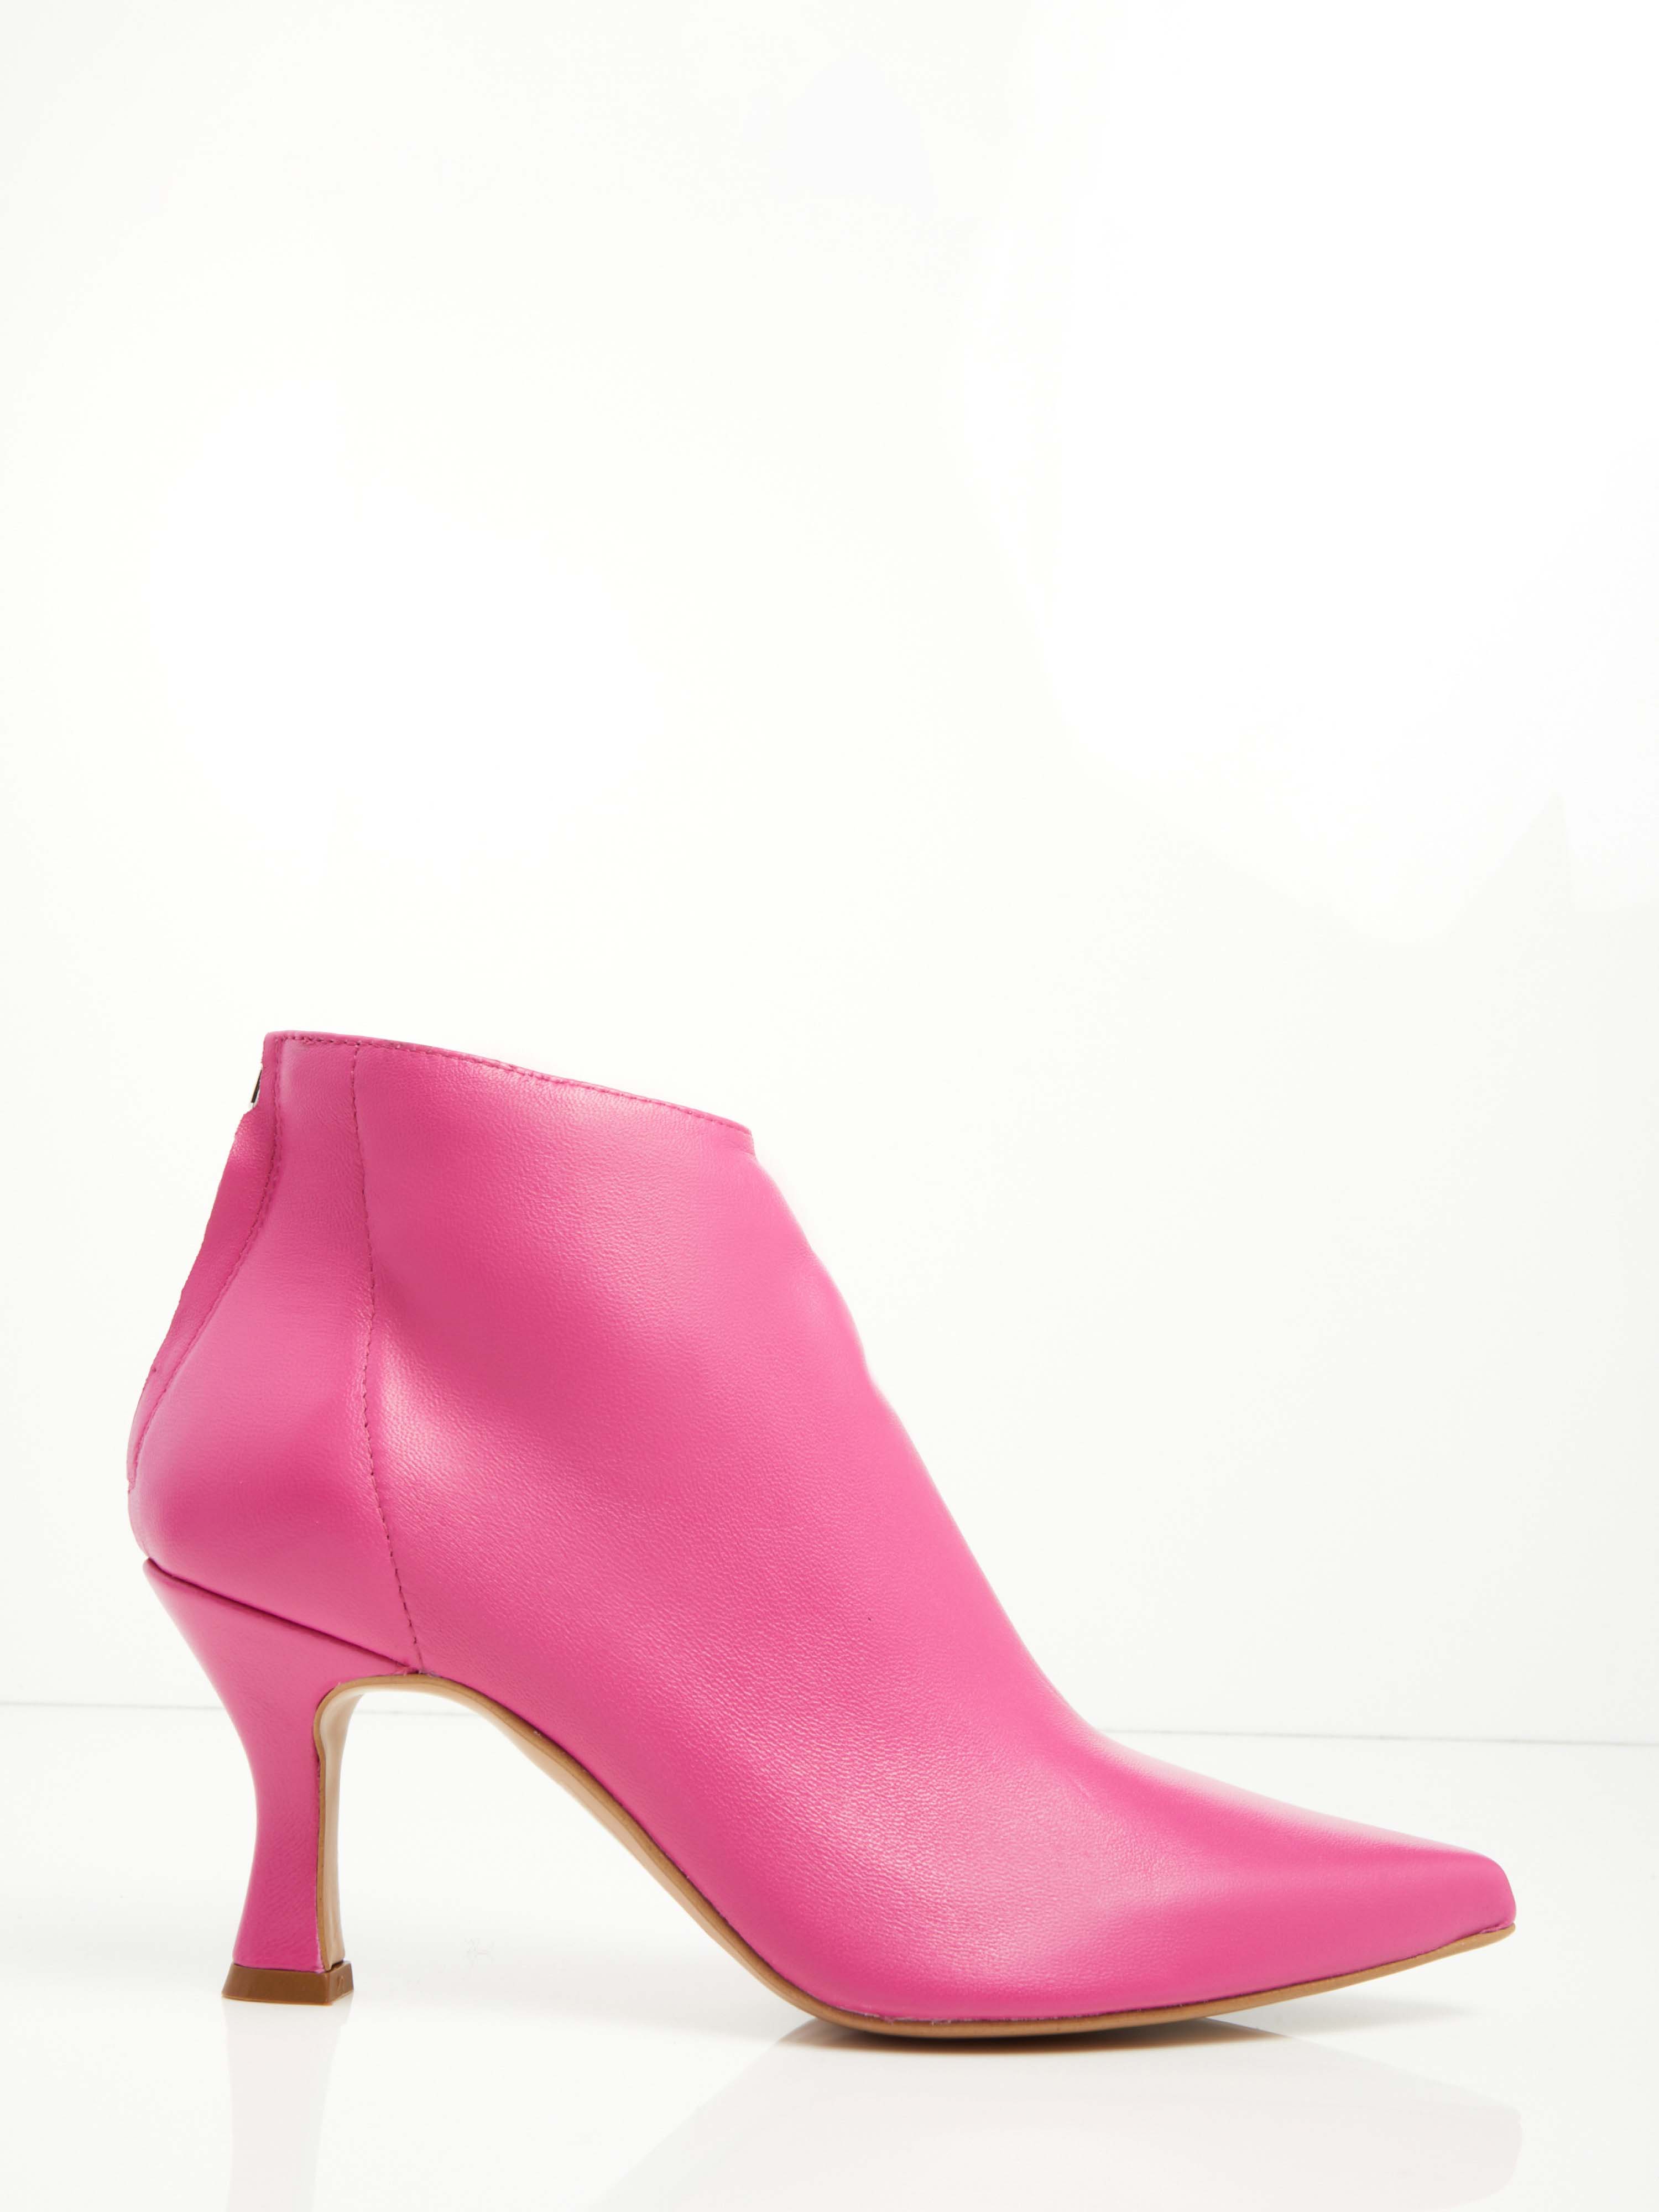 Sconti Dal 35% Al 70% Leather Ankle Boots F0545554-0416 scarpe alla moda